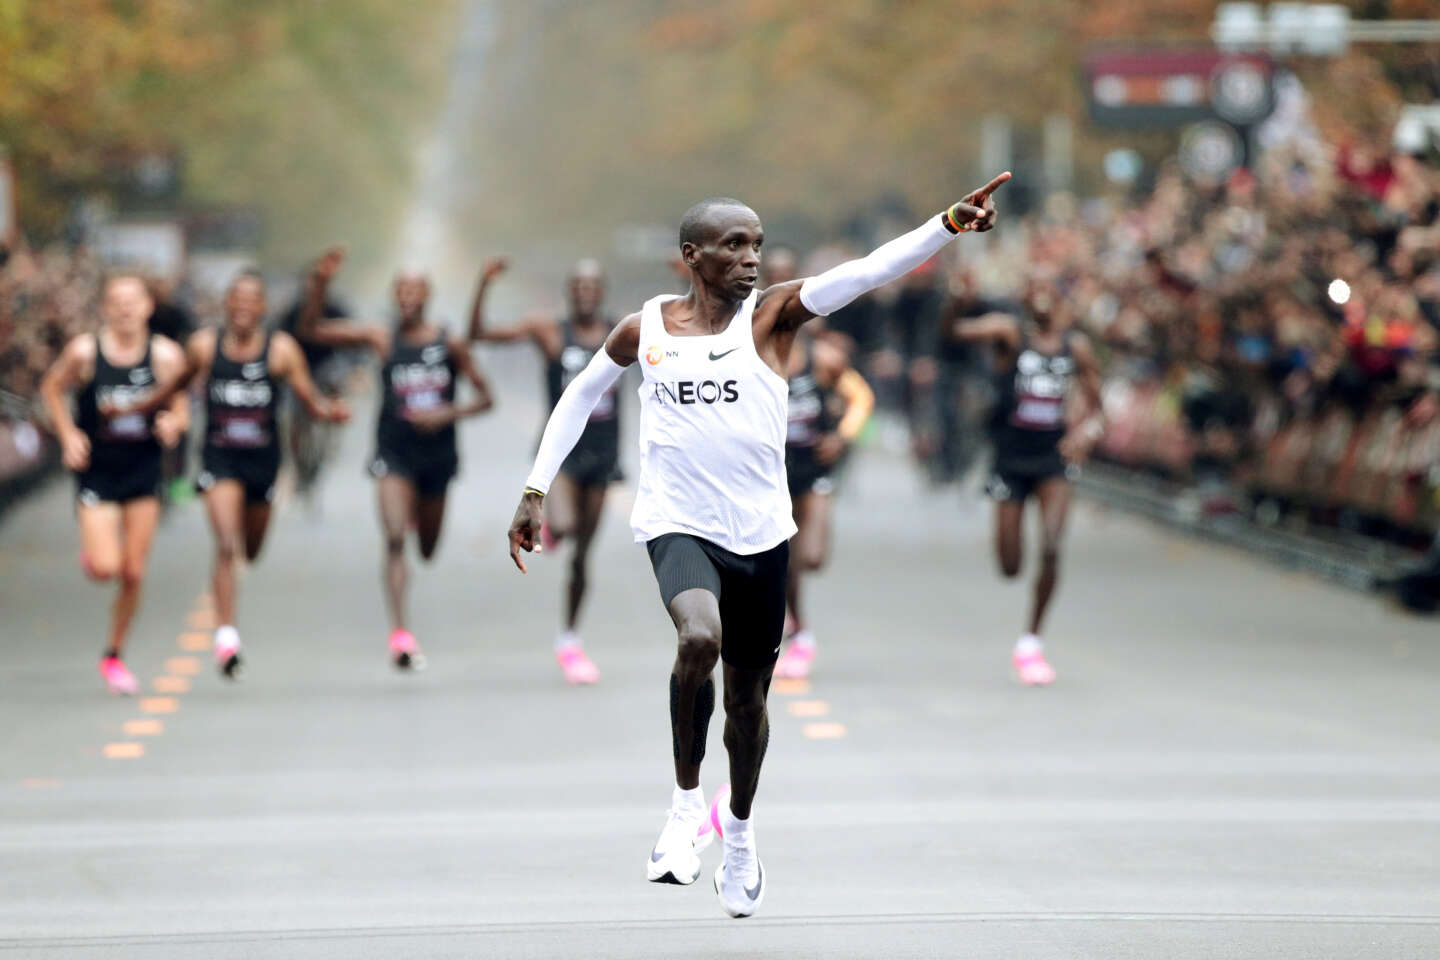 Chaussures Running Nike homme - Comparez les prix et consultez les opinions